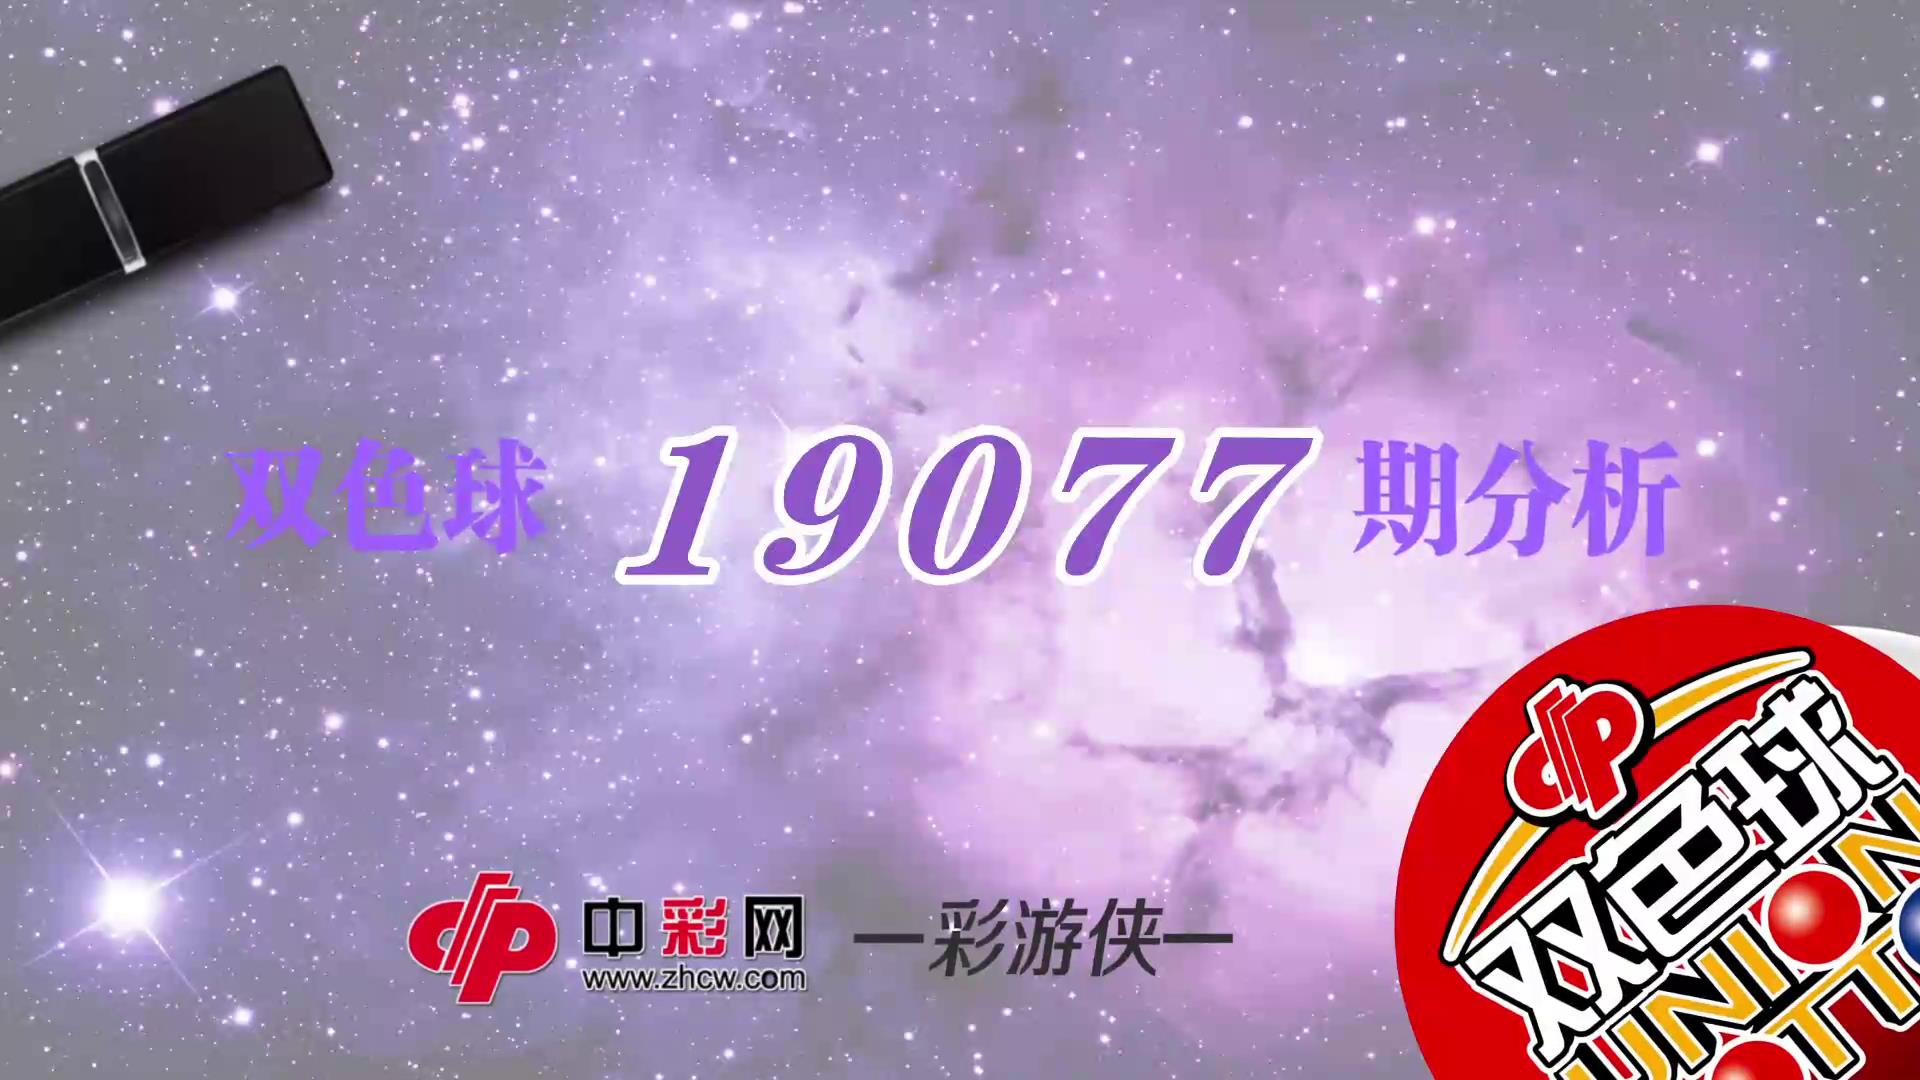 【中彩视频】彩游侠双色球第19077期